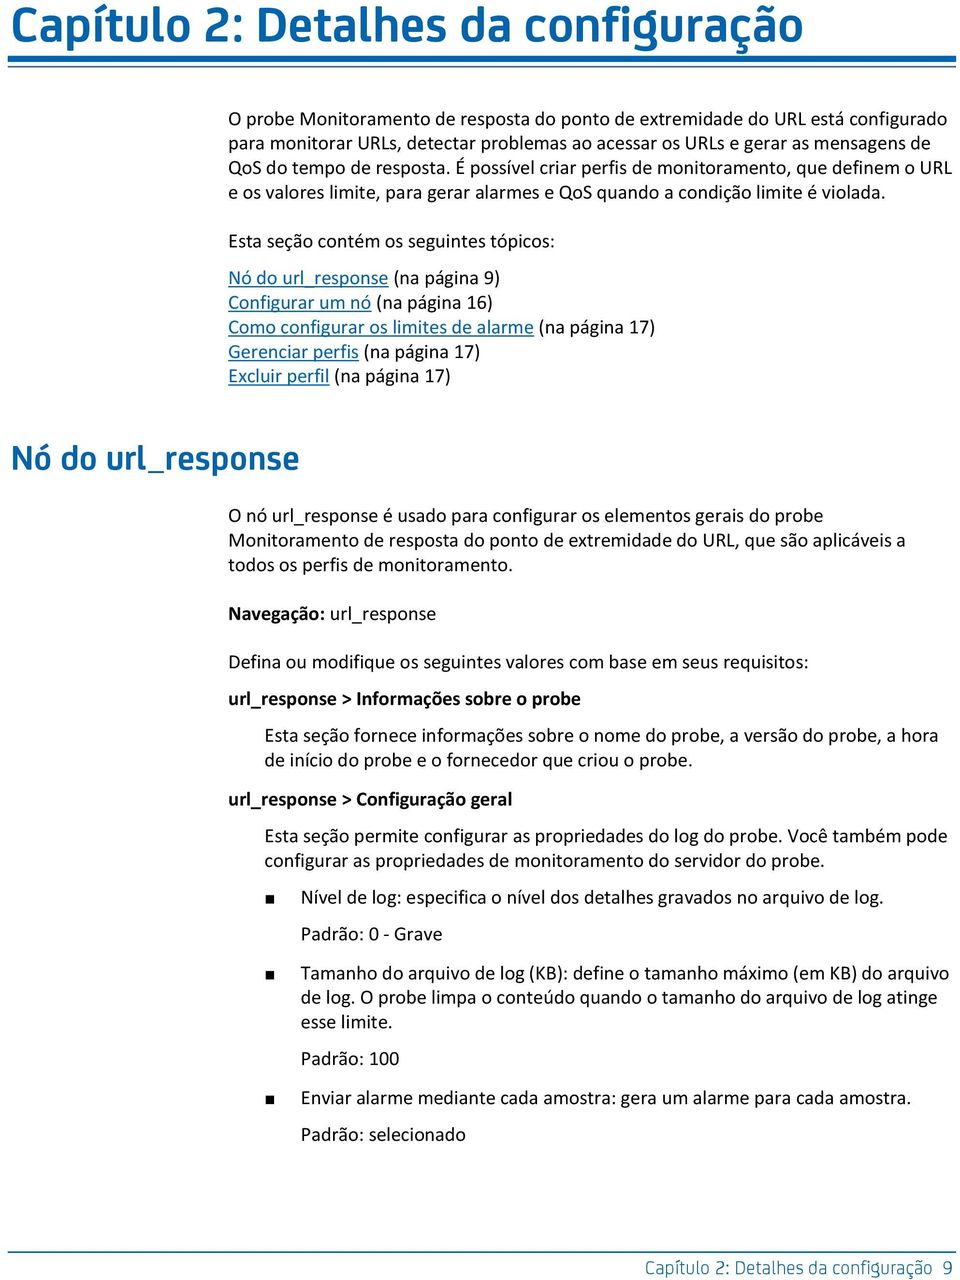 Esta seção contém os seguintes tópicos: Nó do url_response (na página 9) Configurar um nó (na página 16) Como configurar os limites de alarme (na página 17) Gerenciar perfis (na página 17) Excluir